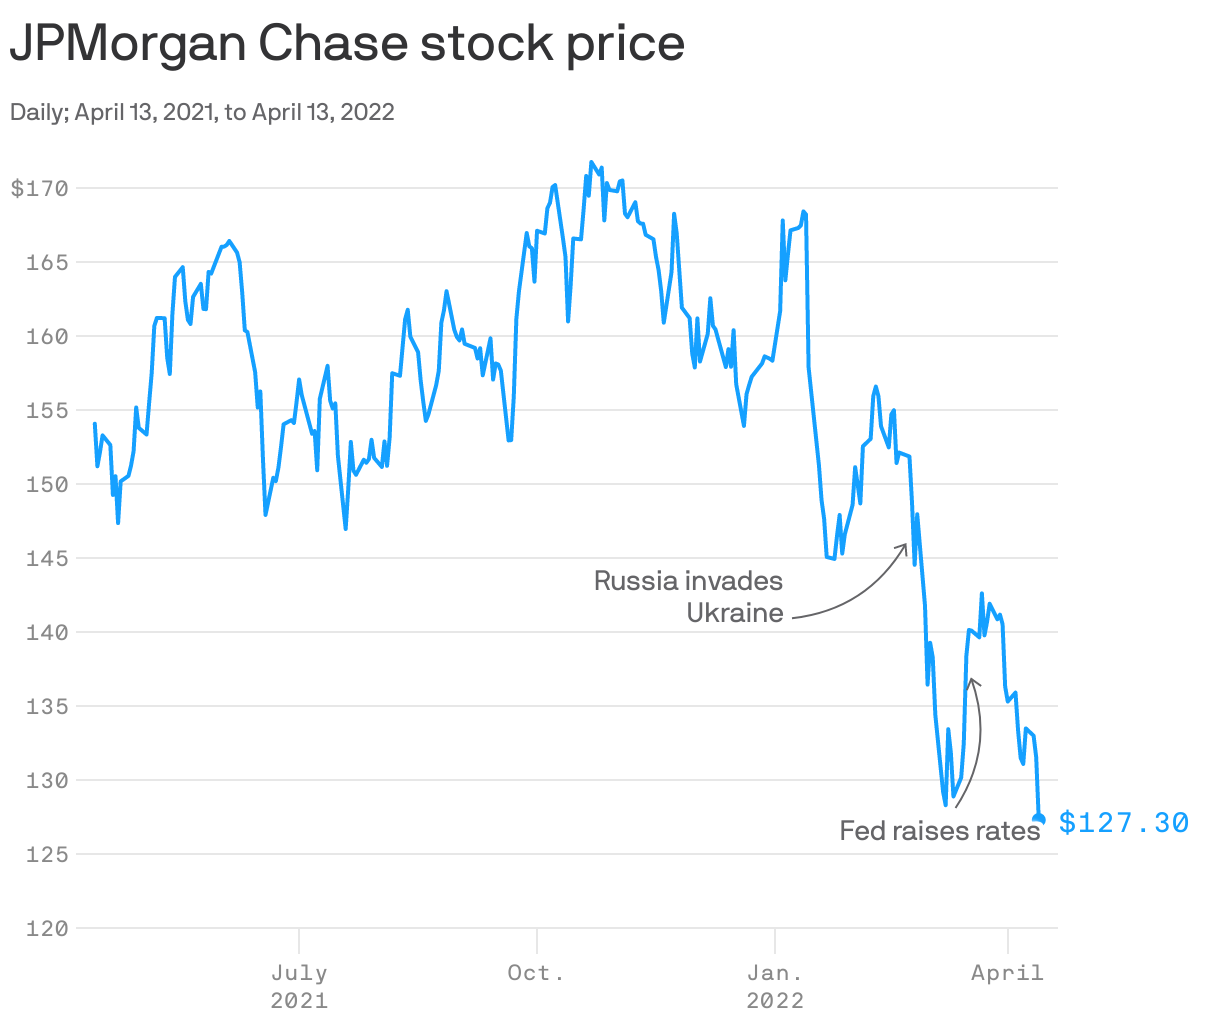 JPMorgan Chase stock price